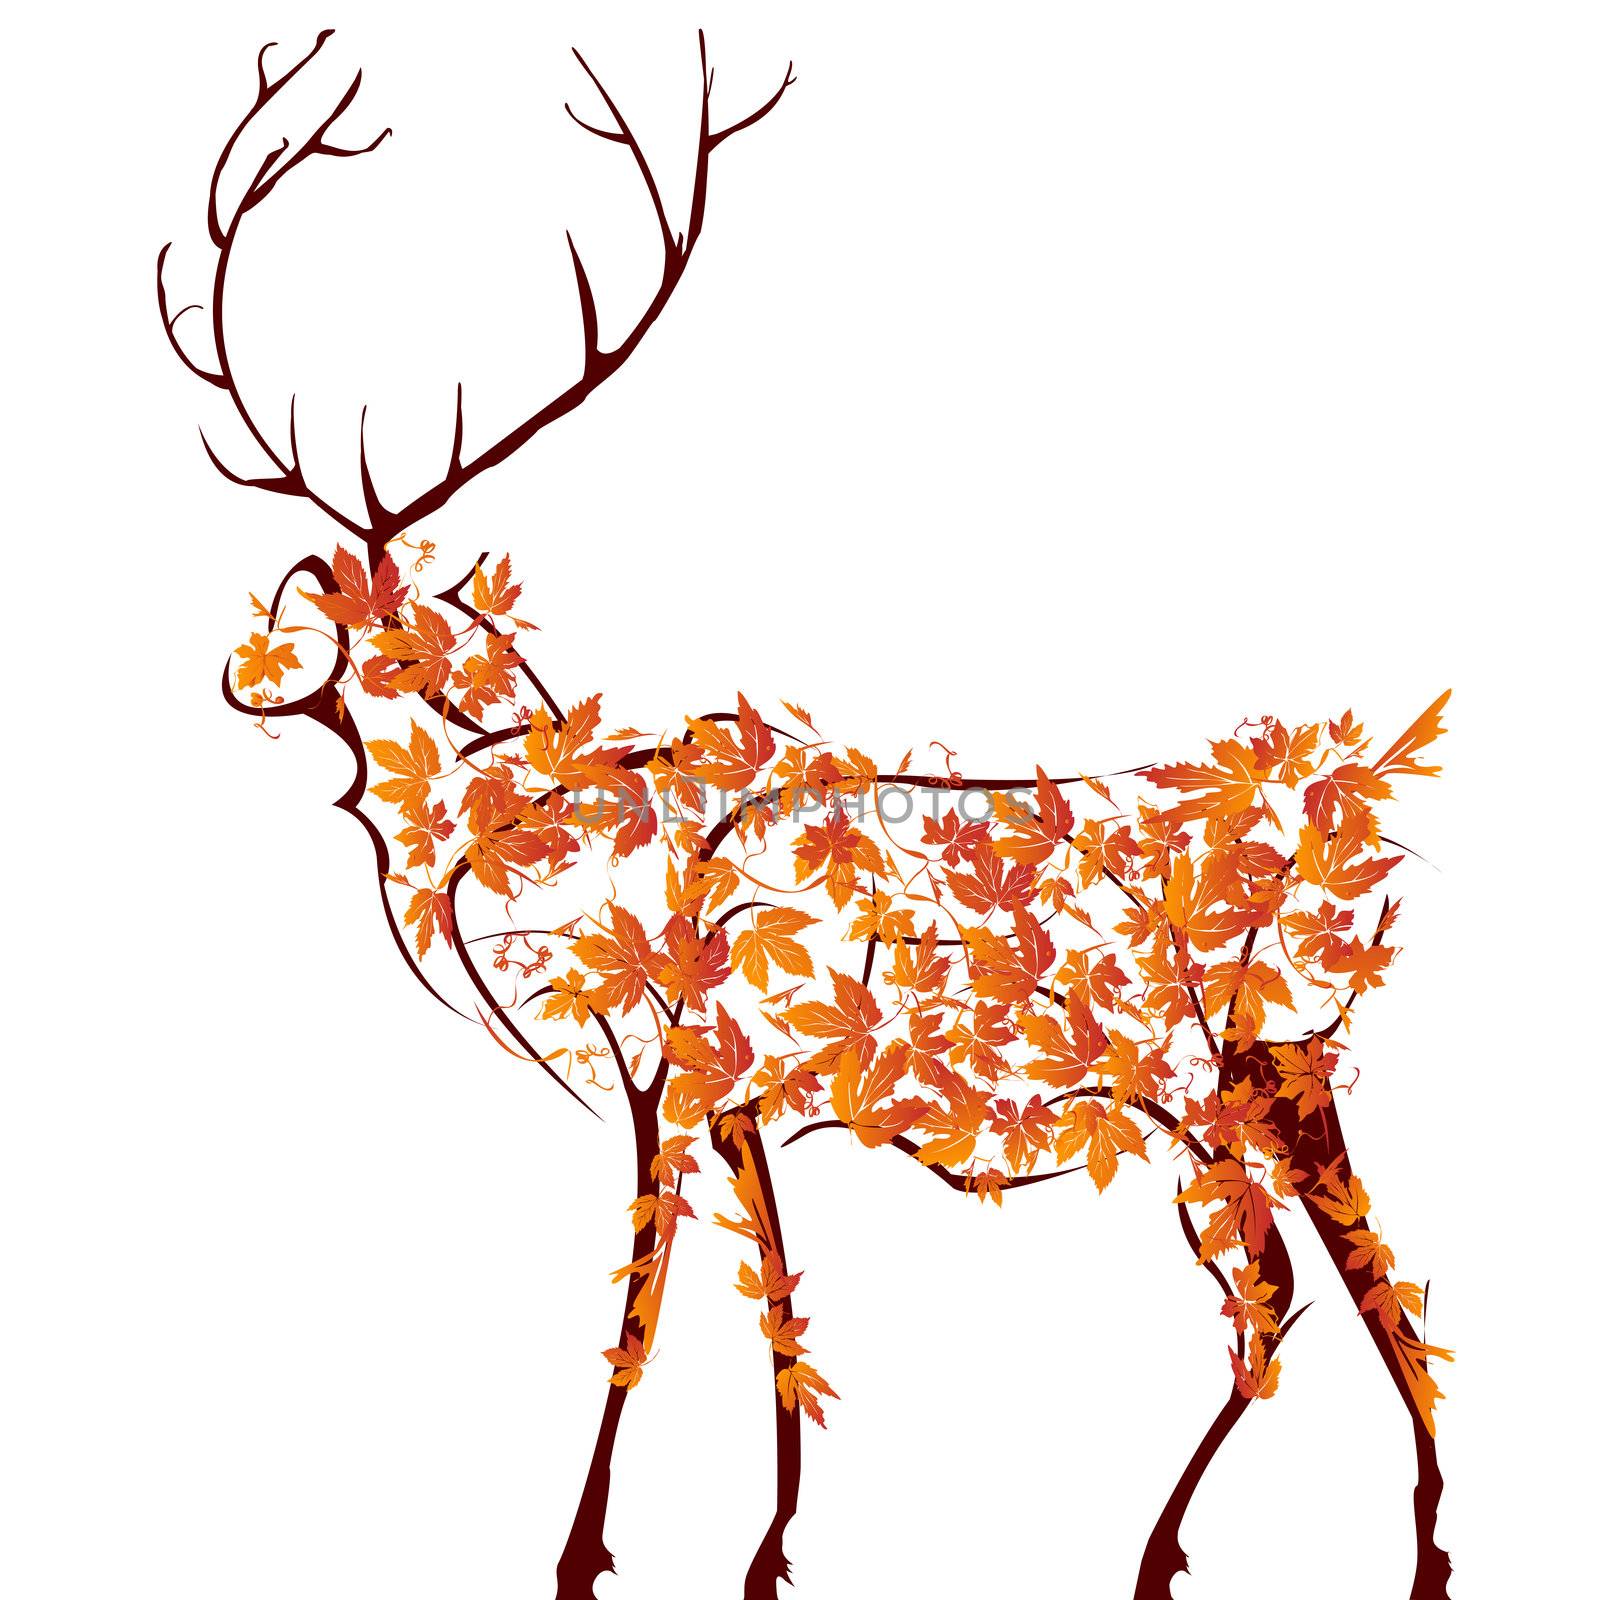 Deer by Lirch